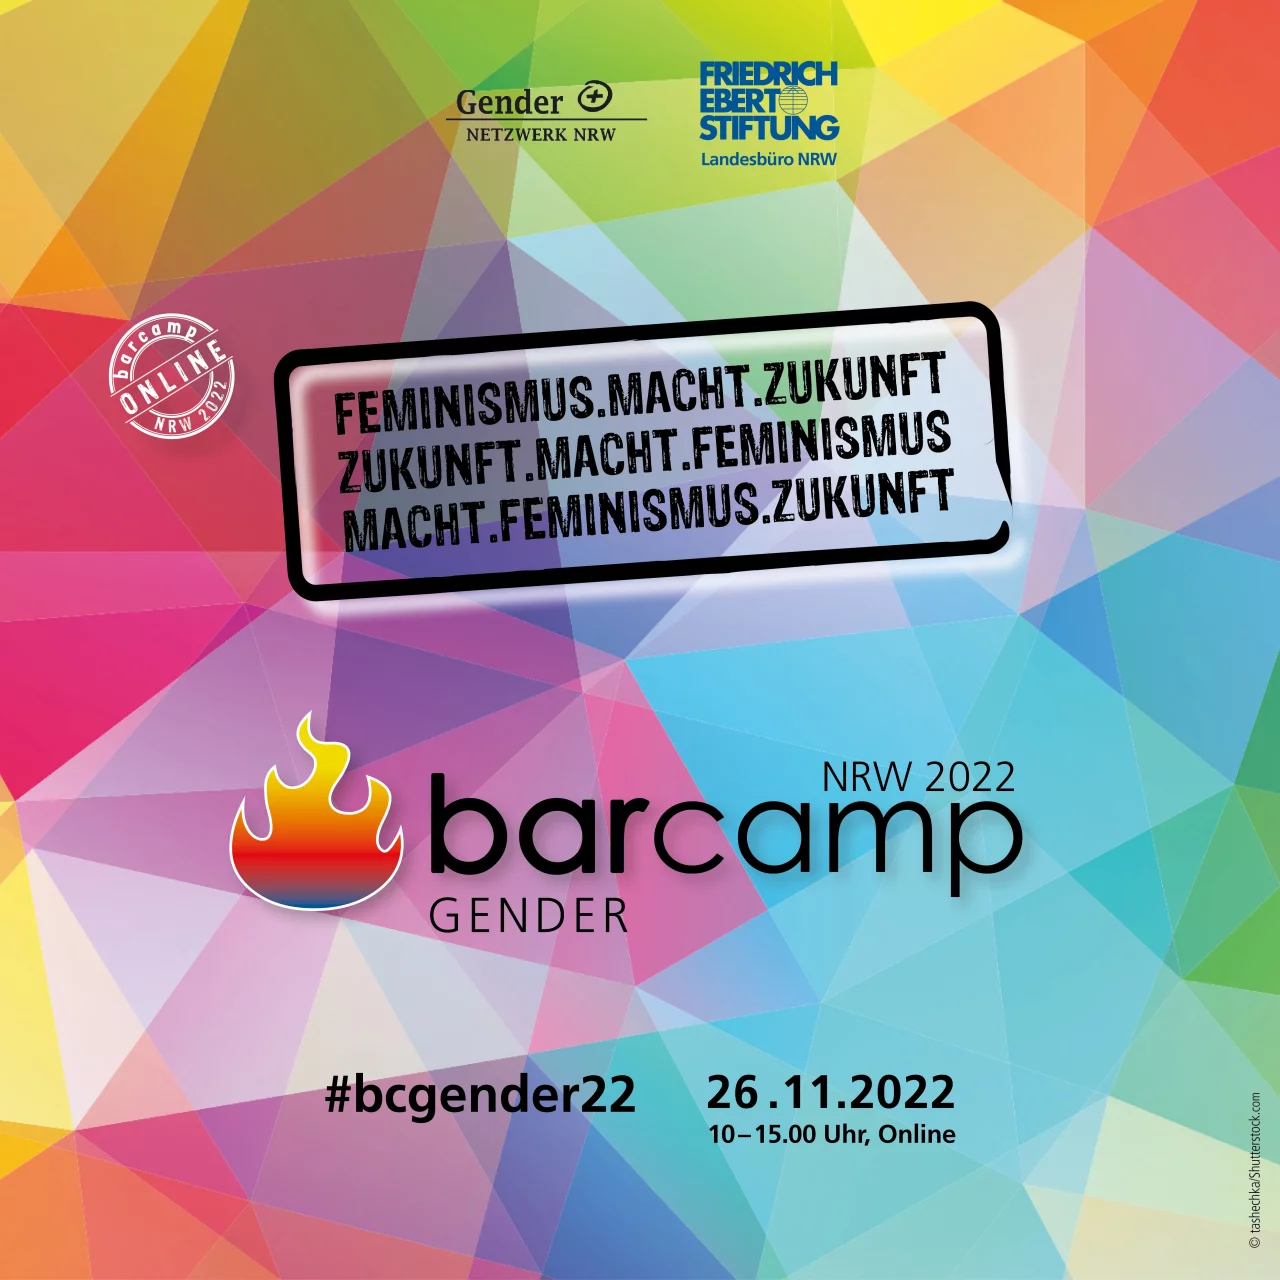 Barcamp Sharpic